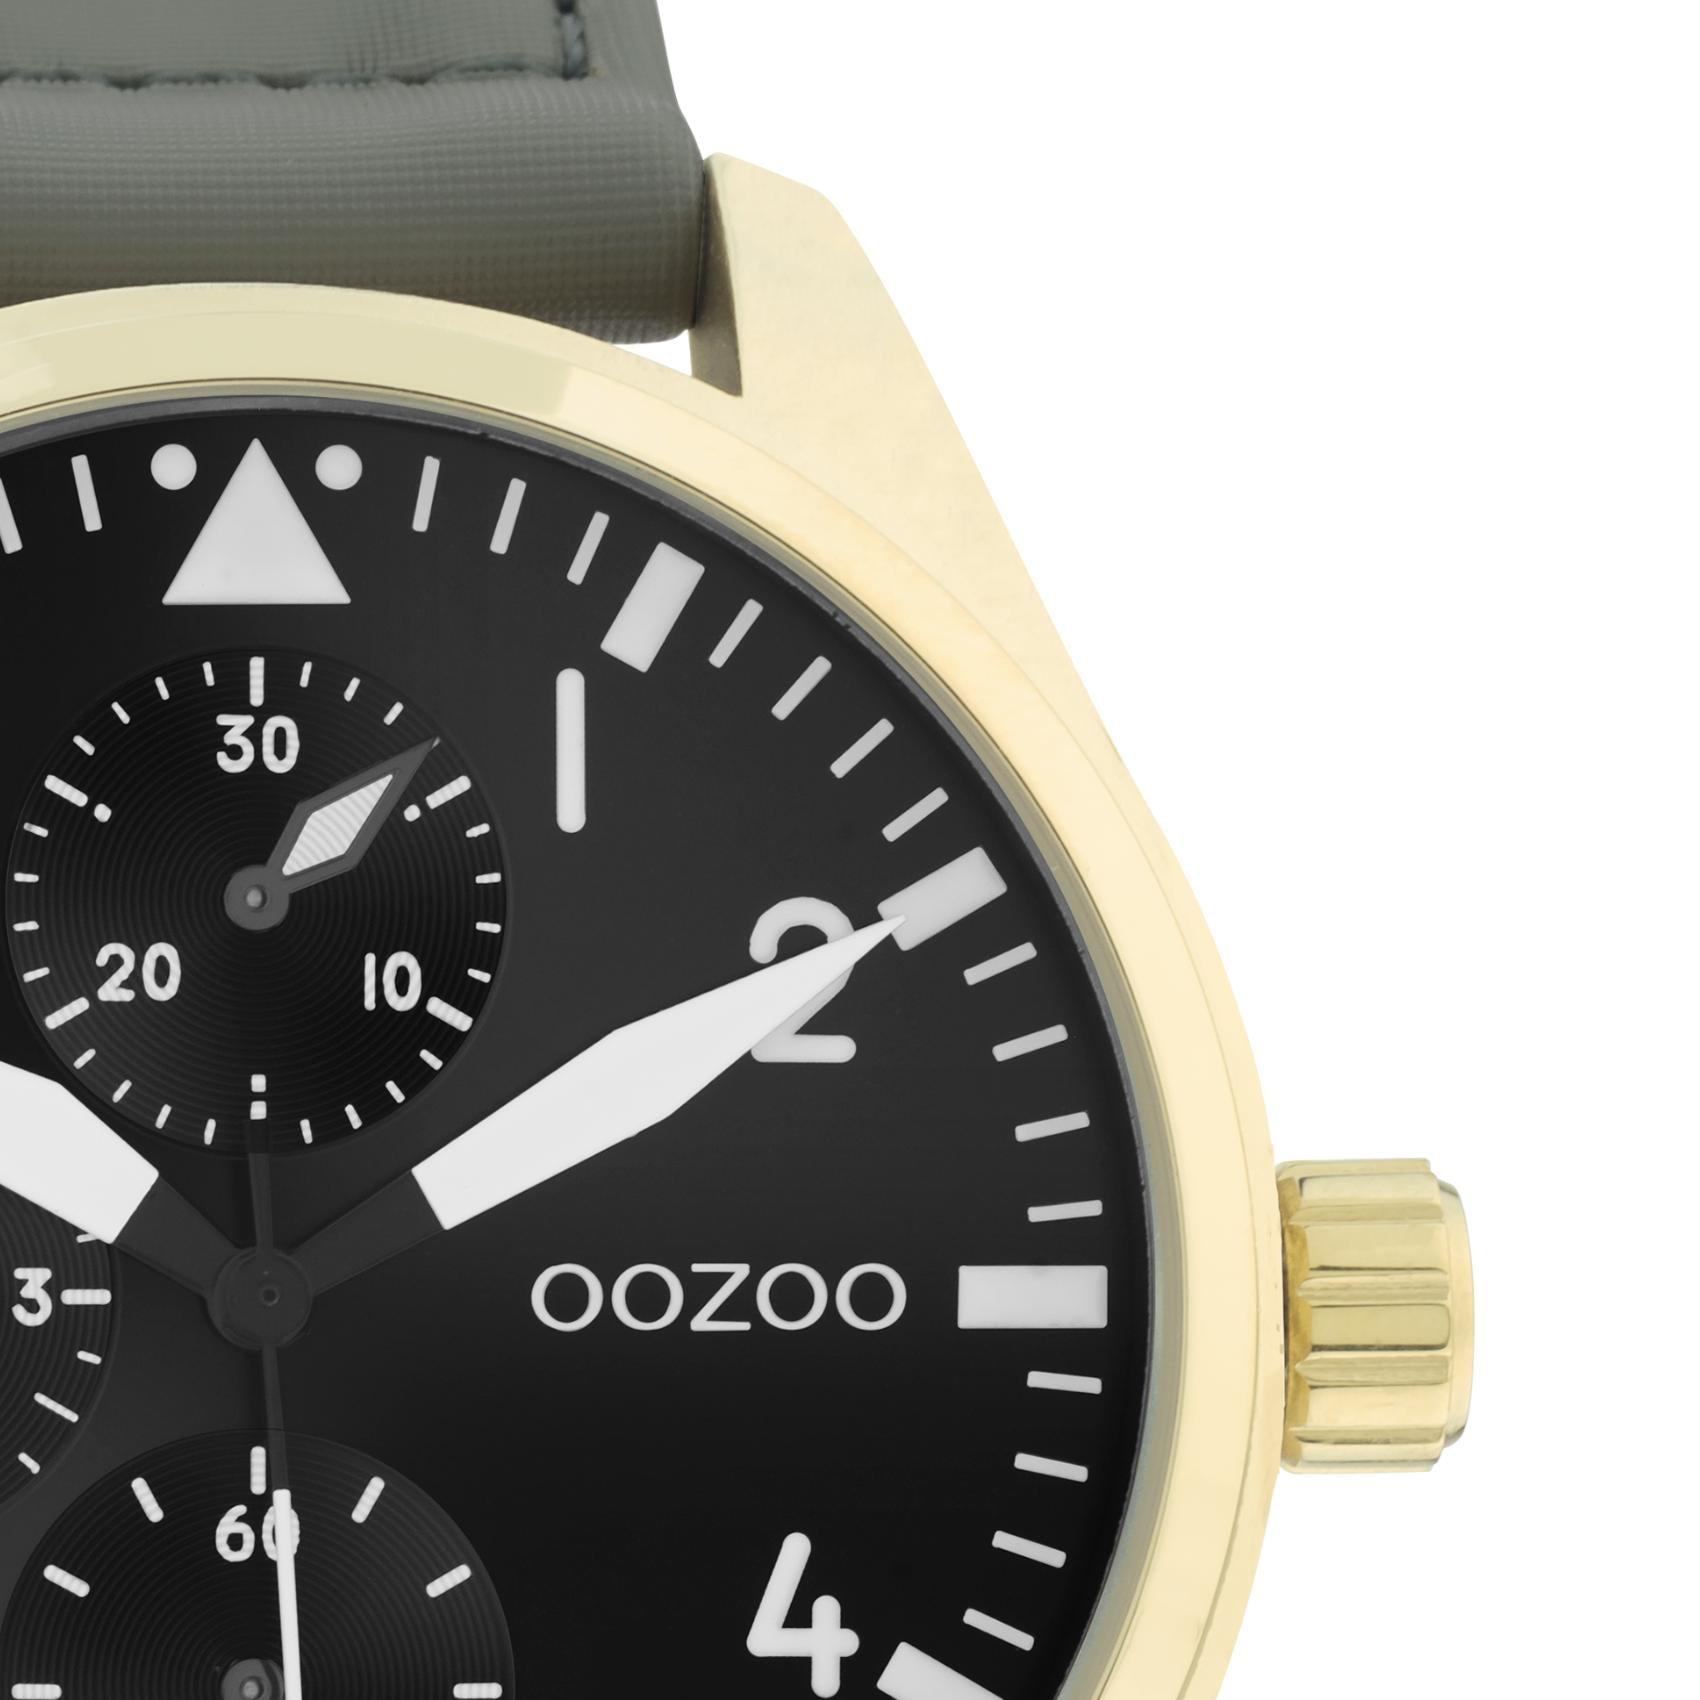 Ρολόι Oozoo C11008 με γκρι δερμάτινο λουράκι ,μαύρο καντράν διαμέτρου 42mm και μηχανισμό μπαταρίας quartz.